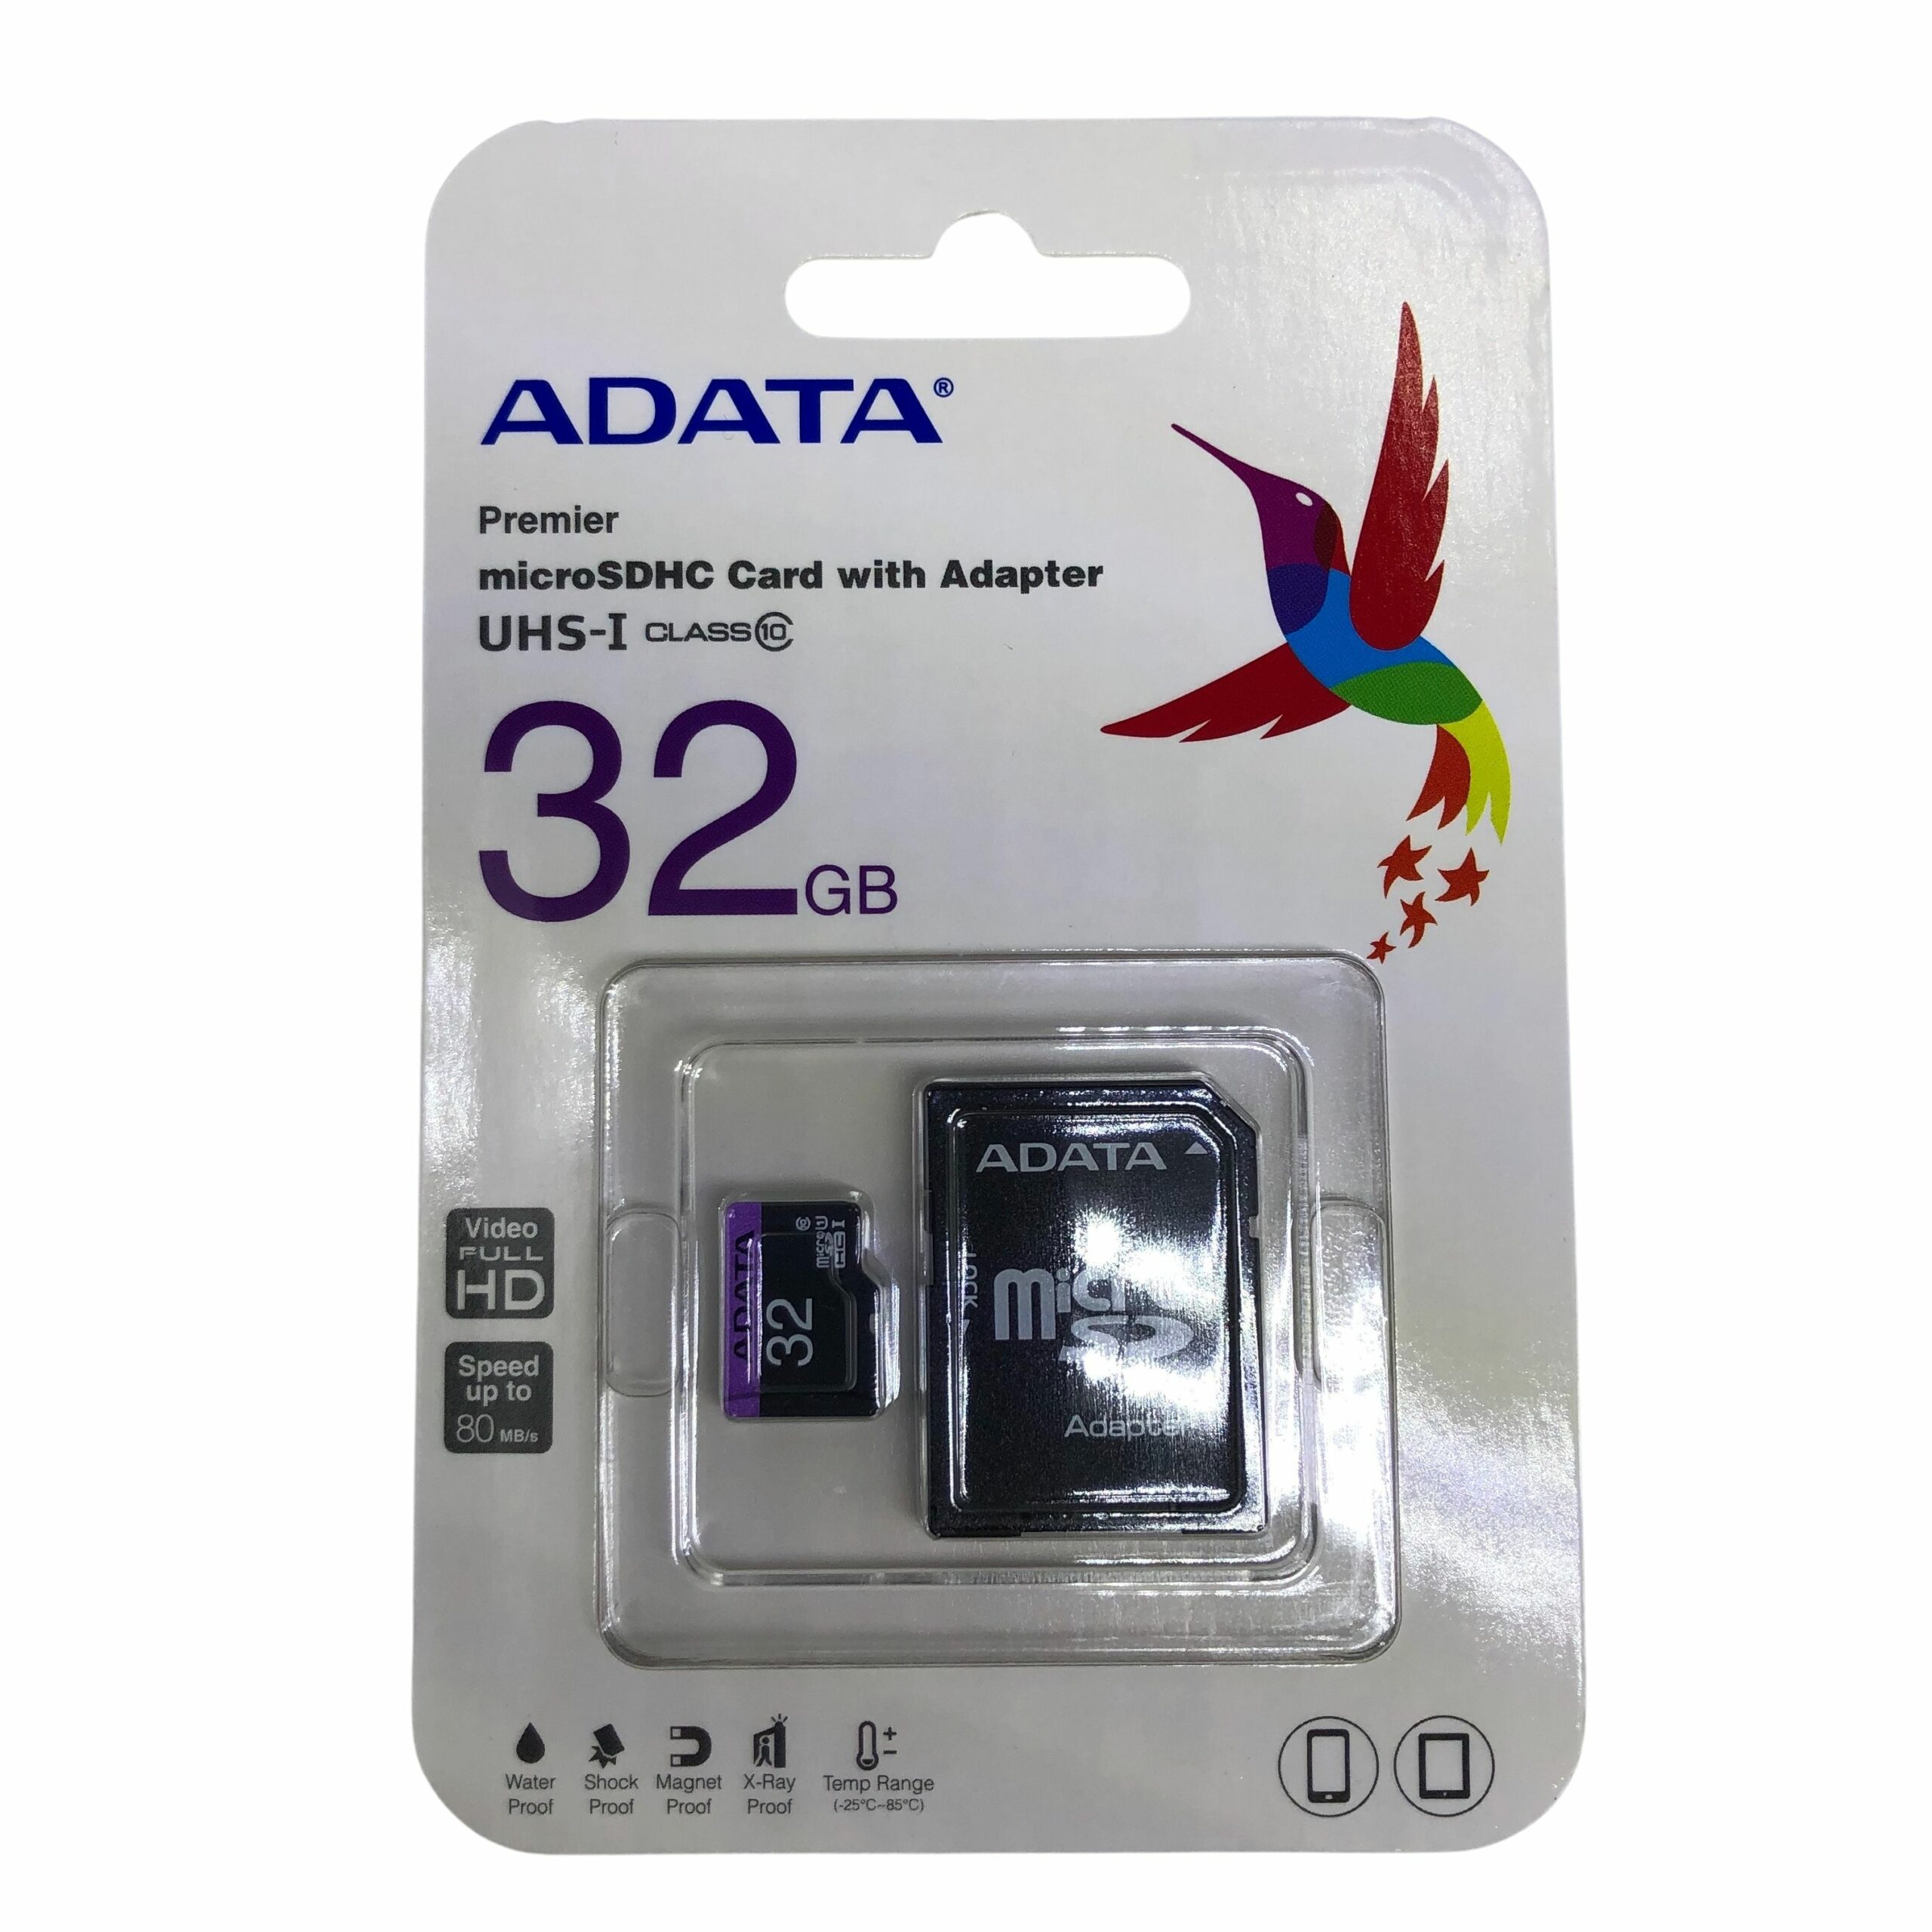 Memoria Micro SD Adata capacidad 32 GB